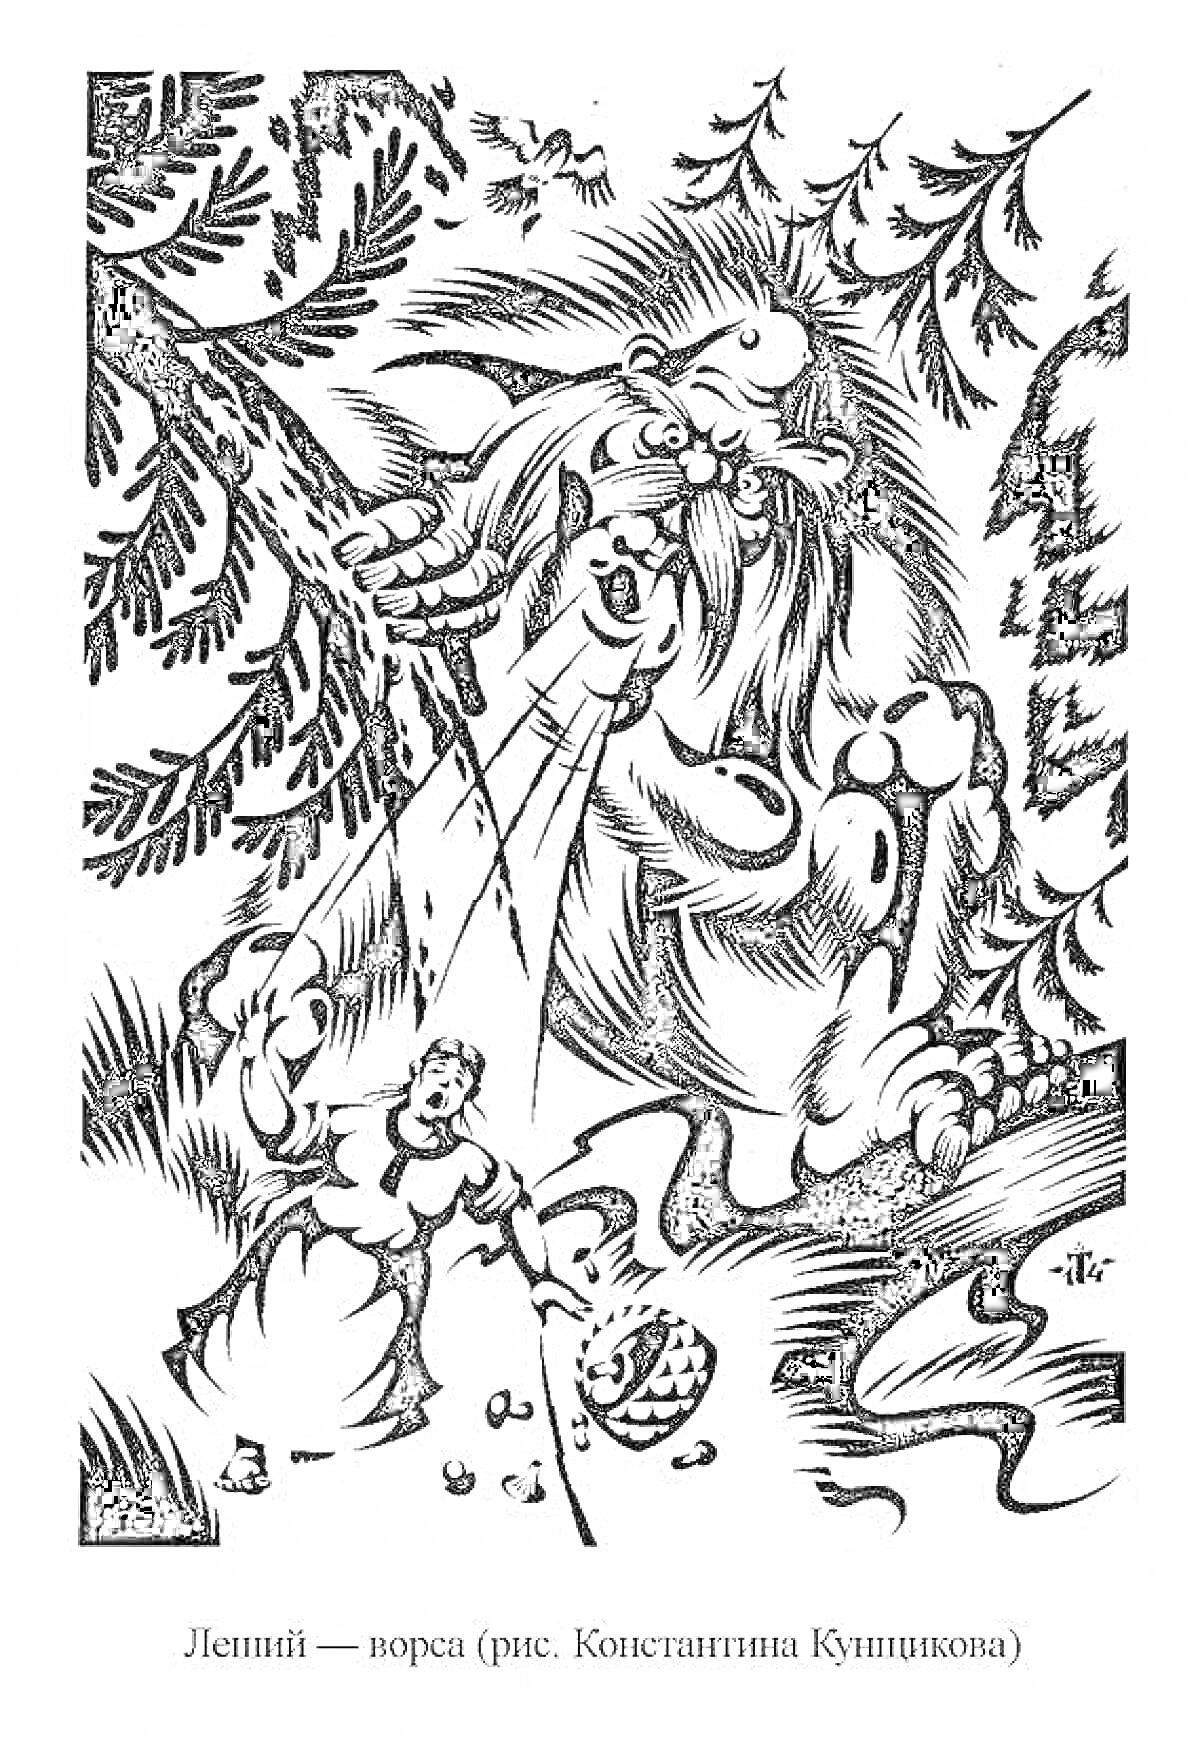 Раскраска Леший - ворса (грозный дух леса с длинными волосами и бородой, прячущийся среди ветвей, с корзинкой ягод, женщина, грибы, лесной пейзаж)